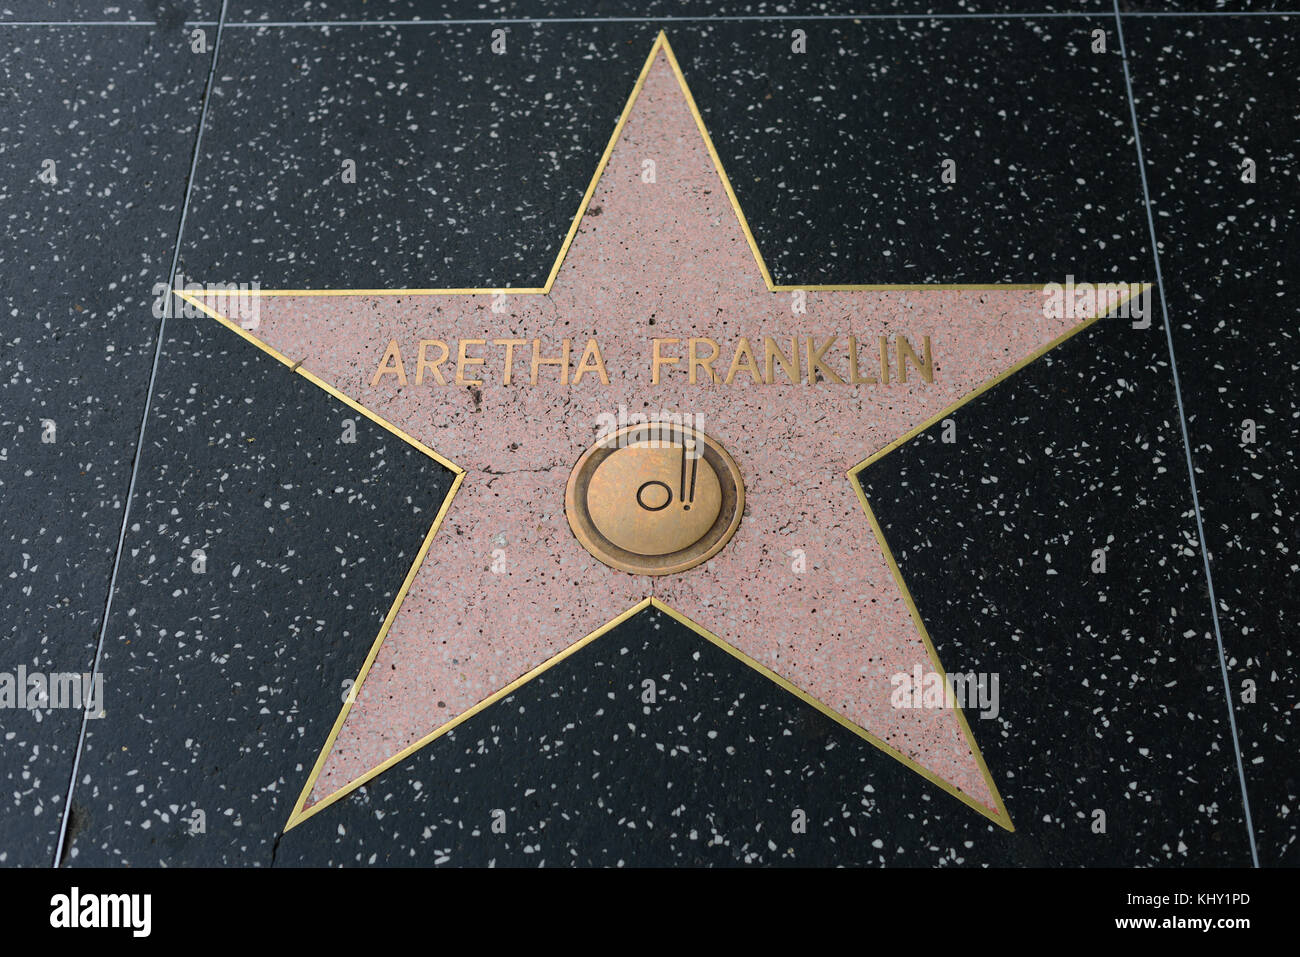 HOLLYWOOD, CA - DICEMBRE 06: Aretha Franklin stella sulla Hollywood Walk of Fame a Hollywood, California il 6 dicembre 2016. Foto Stock